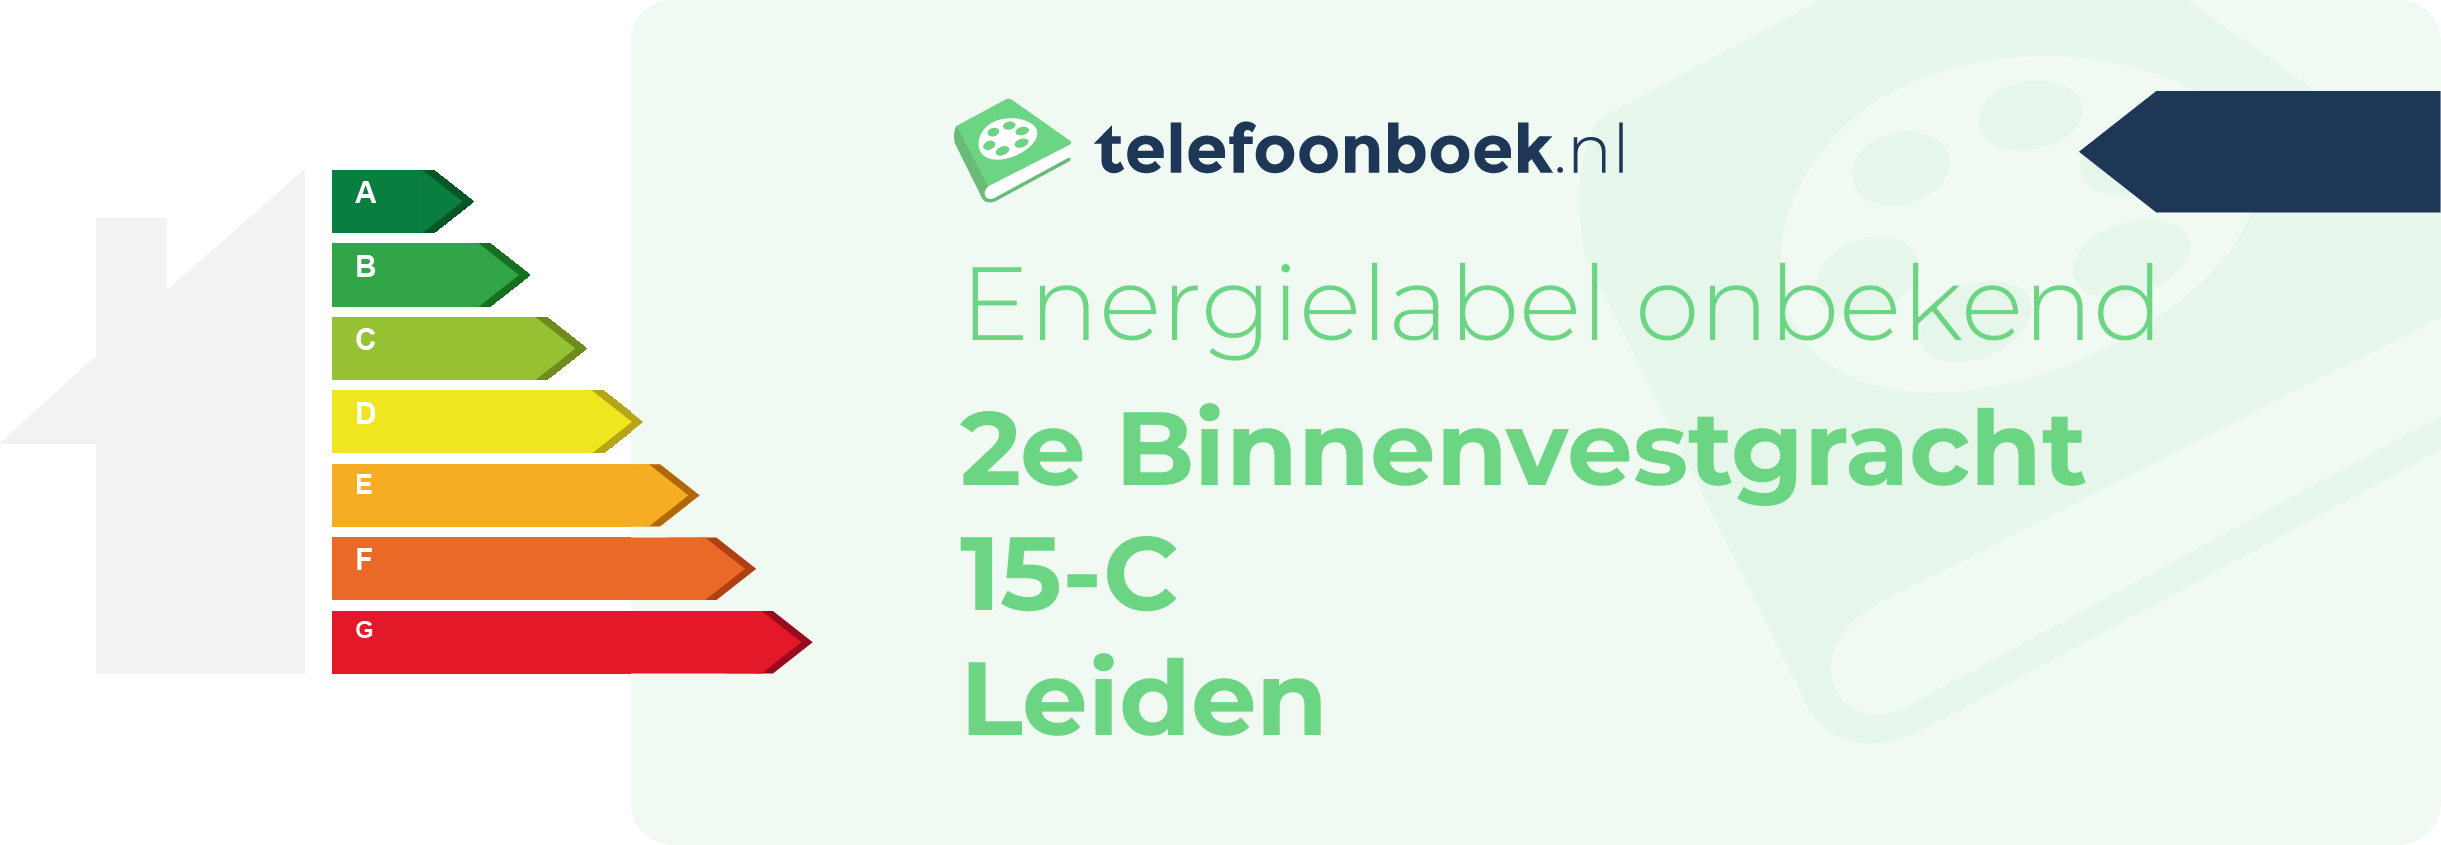 Energielabel 2e Binnenvestgracht 15-C Leiden